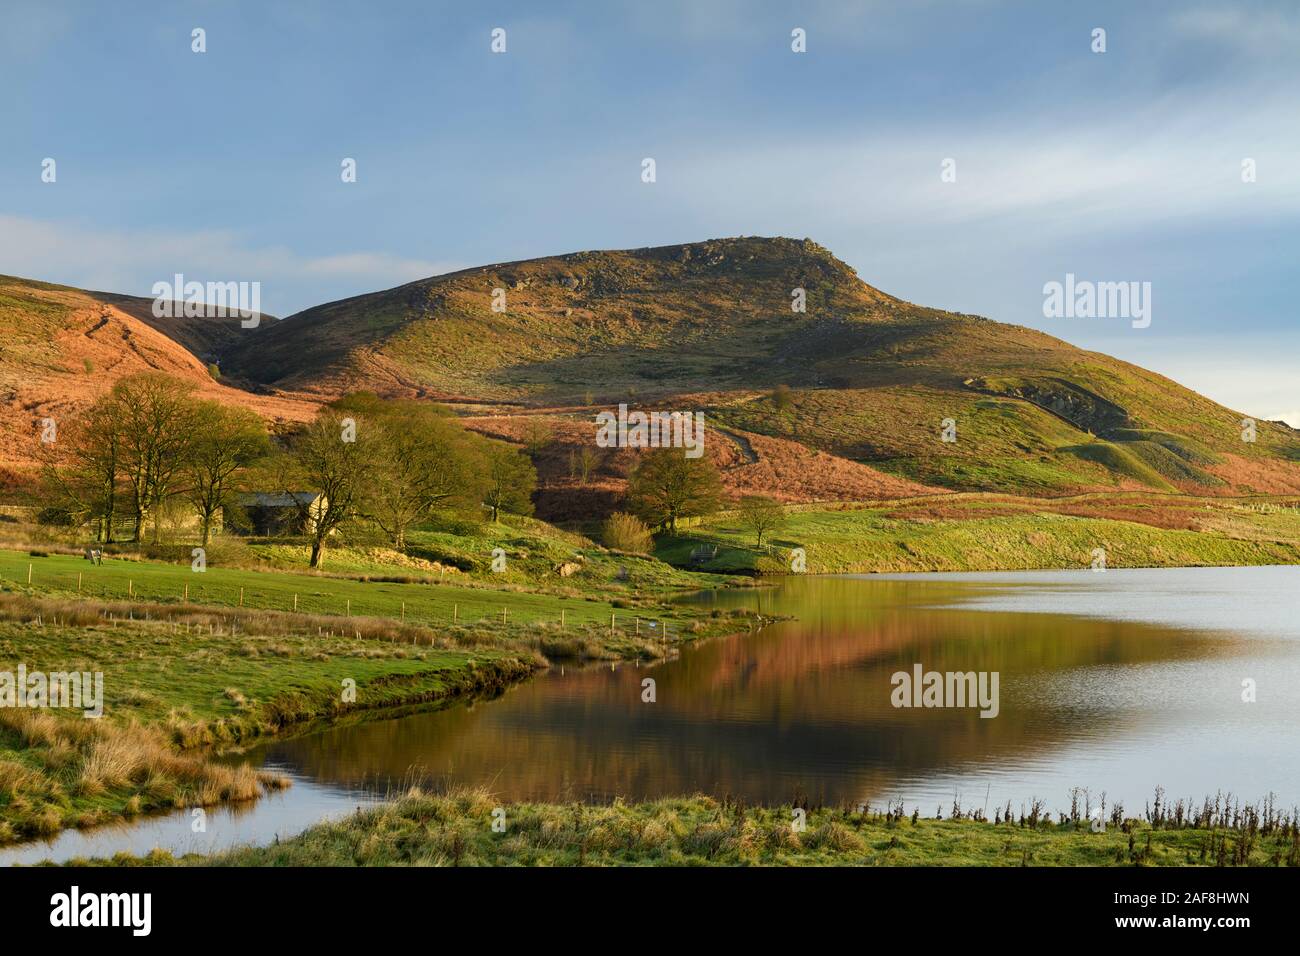 Scenic matin vue rural (réservoir Embsay, raide sunlit fells ou maures, sommet de la haute colline montagne & crag, ciel bleu) - North Yorkshire, Angleterre, Royaume-Uni. Banque D'Images